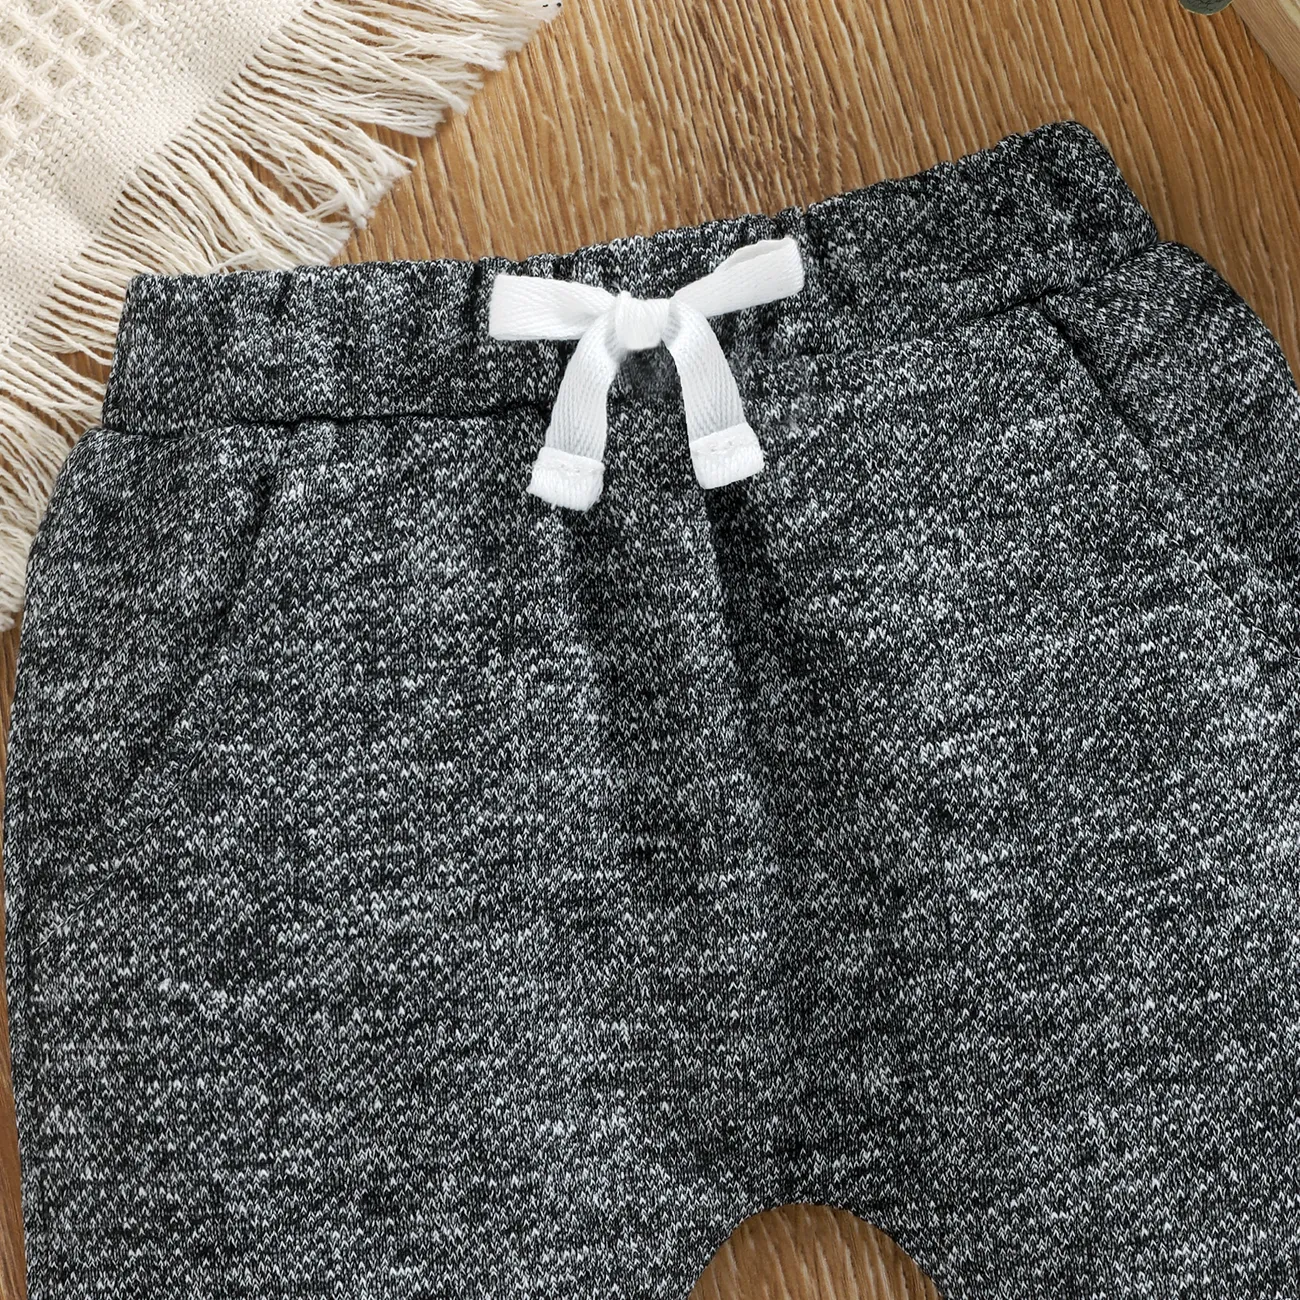 Pantalón bebe niño/niña 95% algodón jaspeado cintura elastizada Gris oscuro big image 1